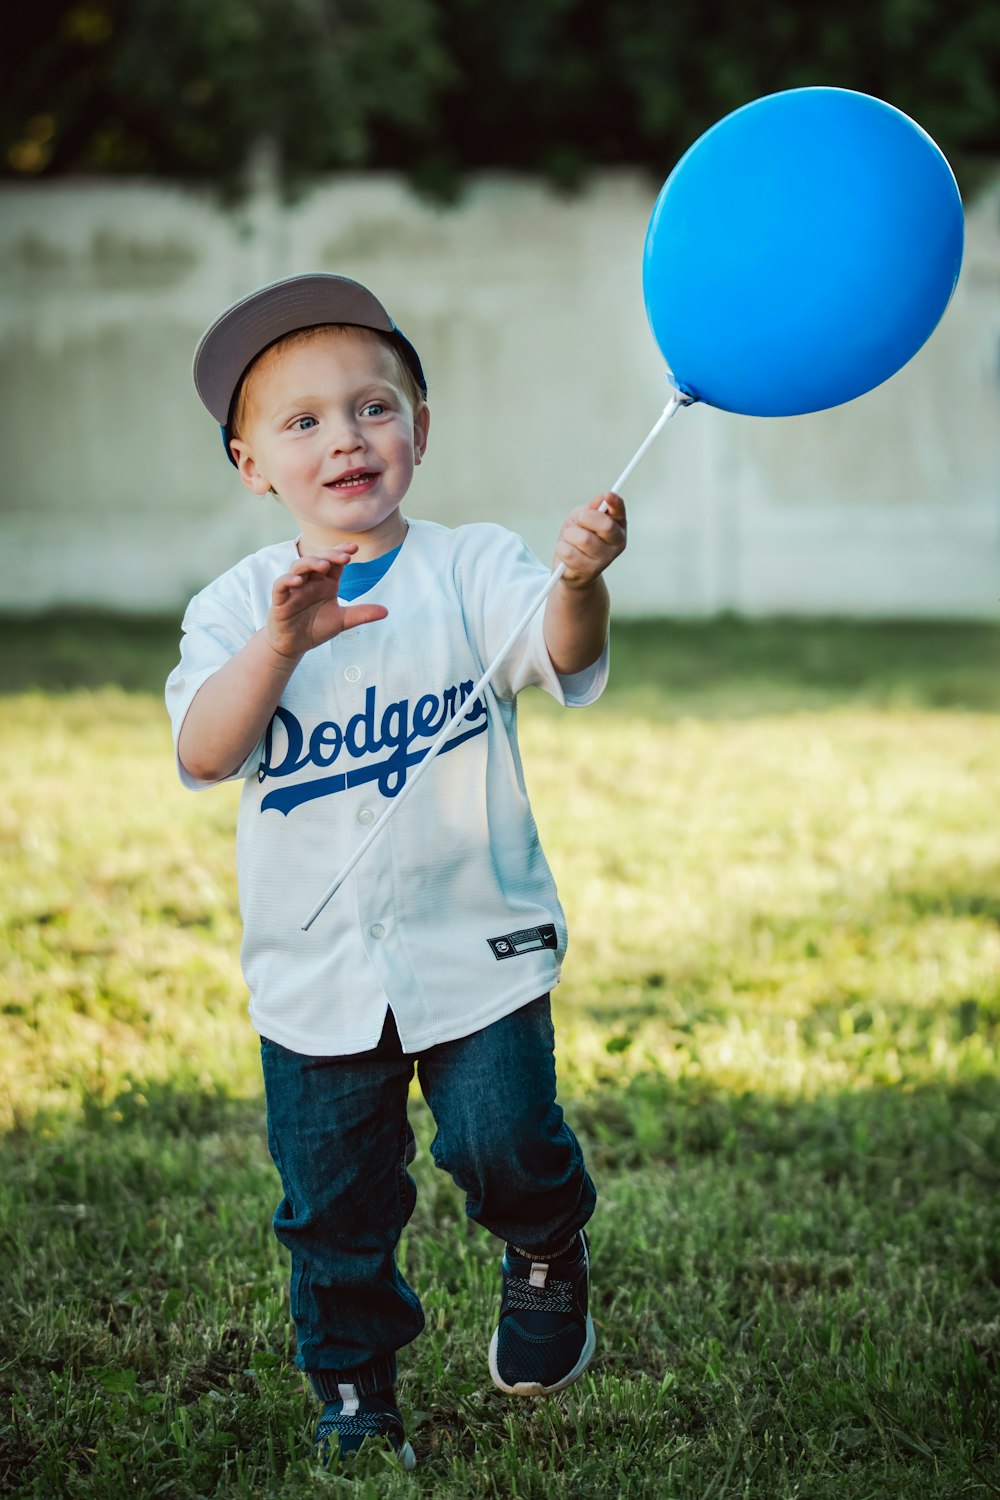 Ein kleiner Junge in einer Baseball-Uniform hält einen blauen Luftballon in der Hand